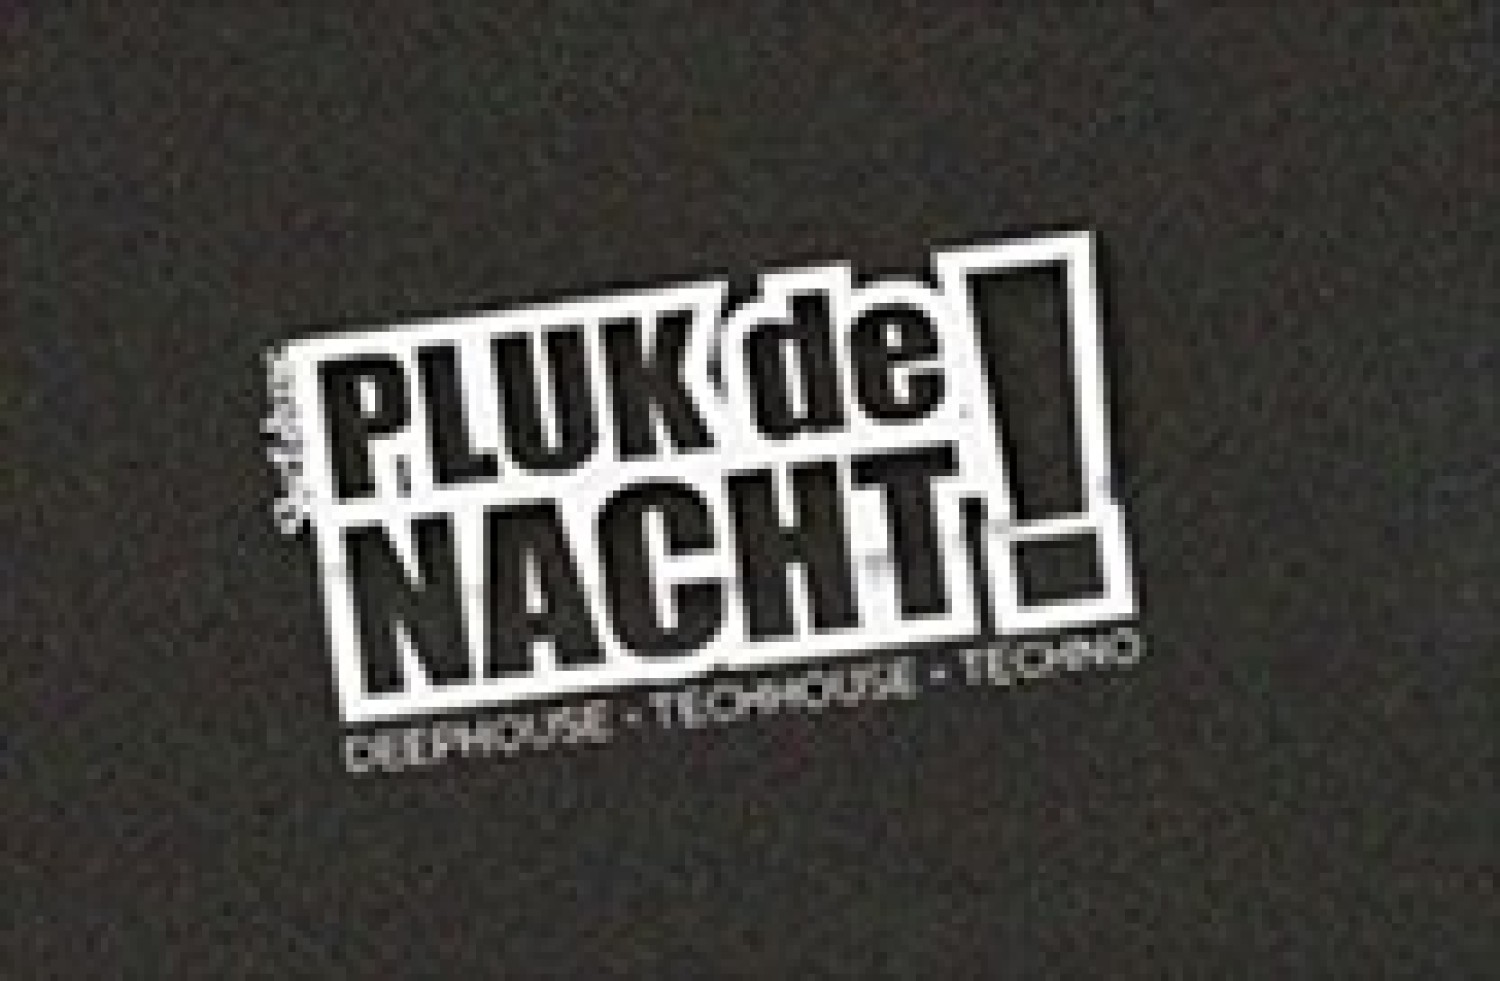 Party report: Pluk de Nacht, Bergen op Zoom (19-03-2016)